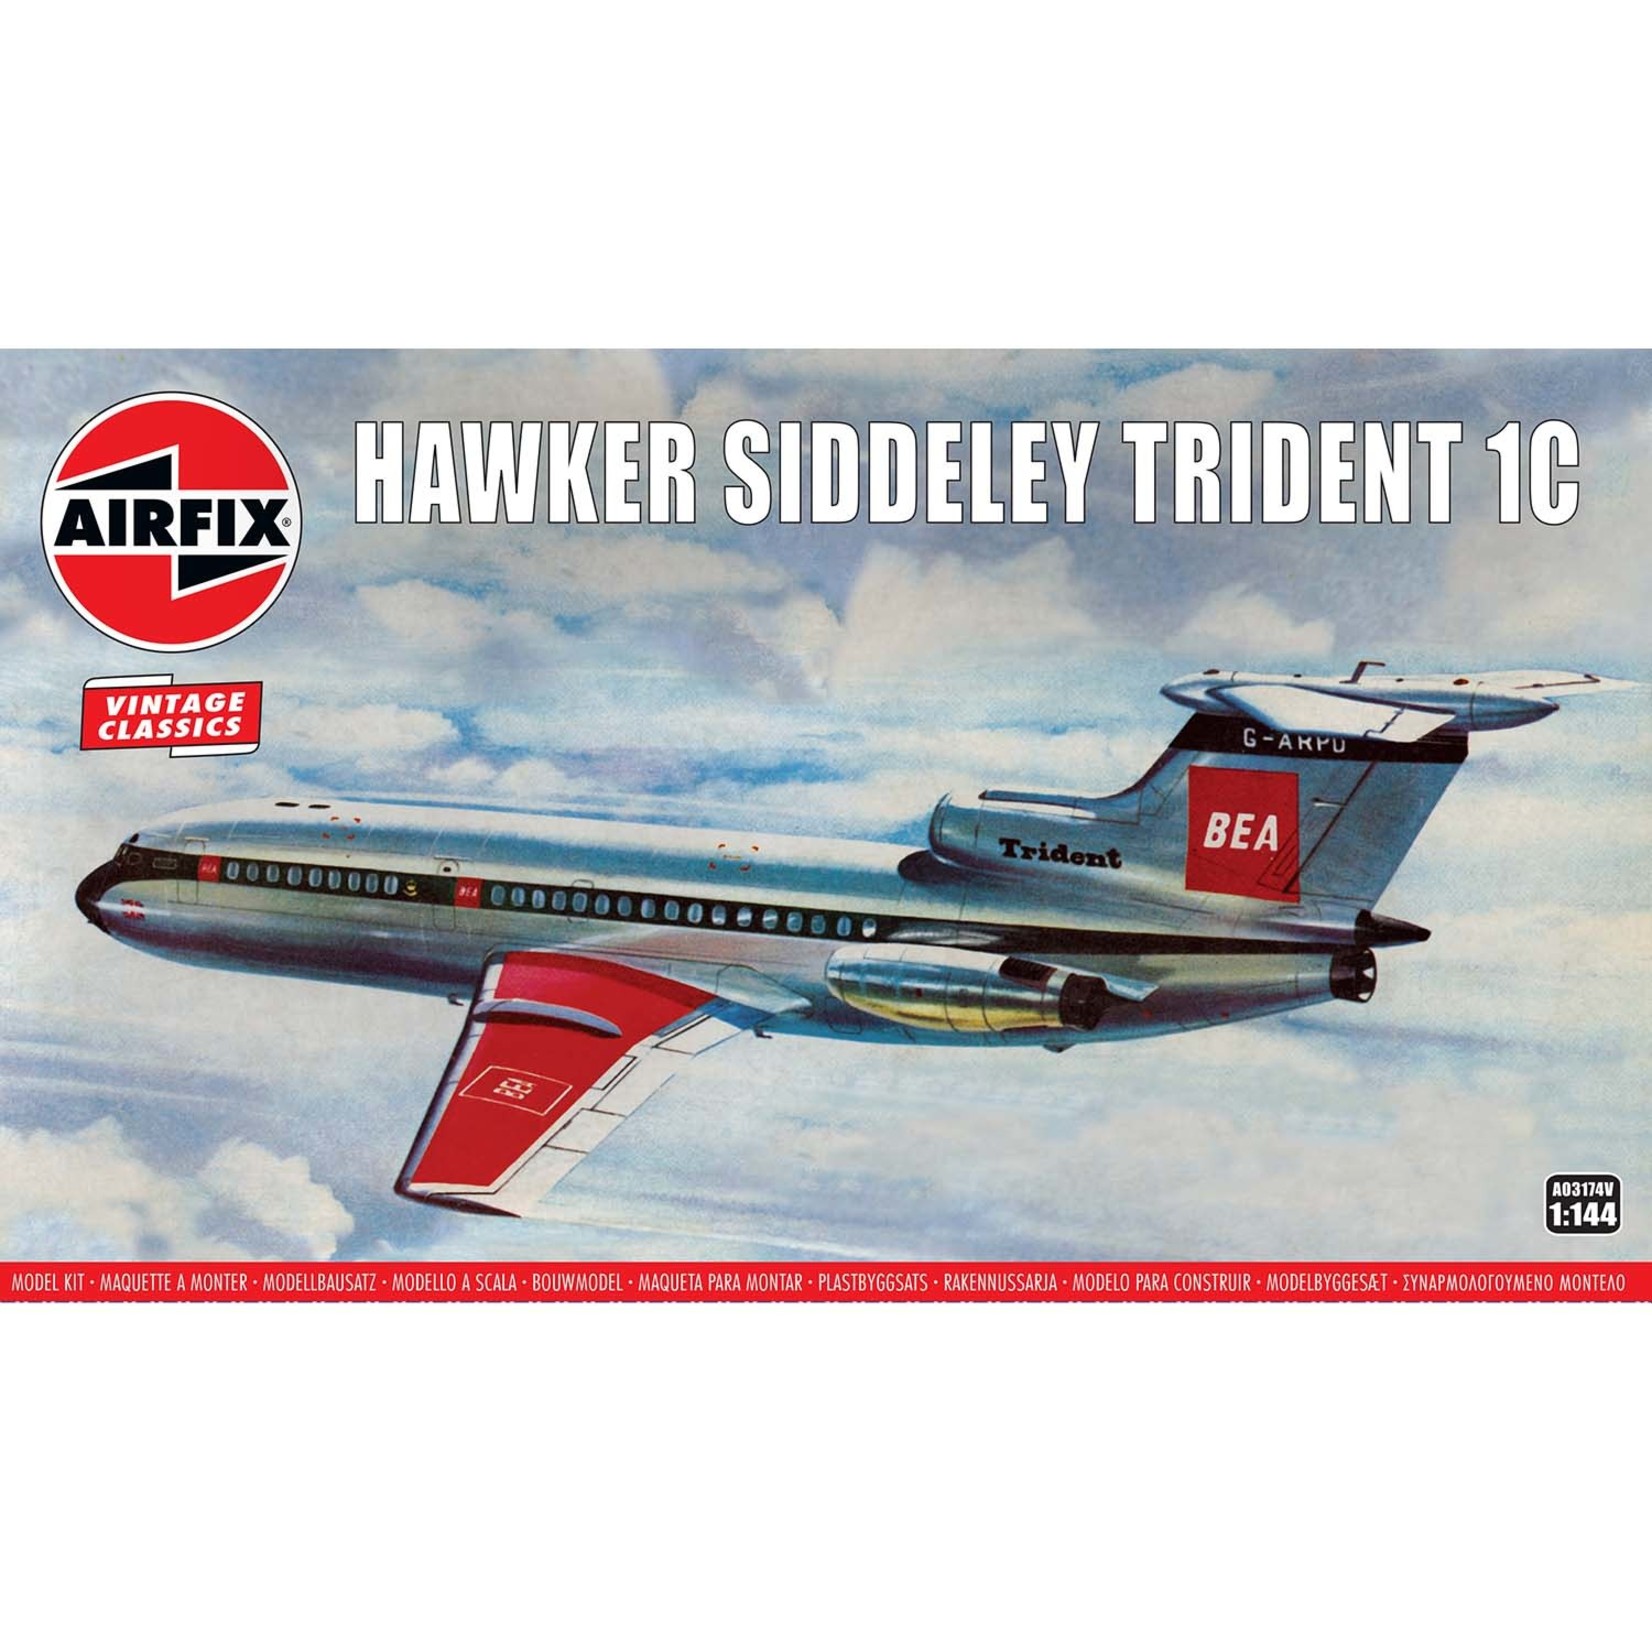 Airfix AIR03174 Hawker Siddeley 121 Trident (1/144)